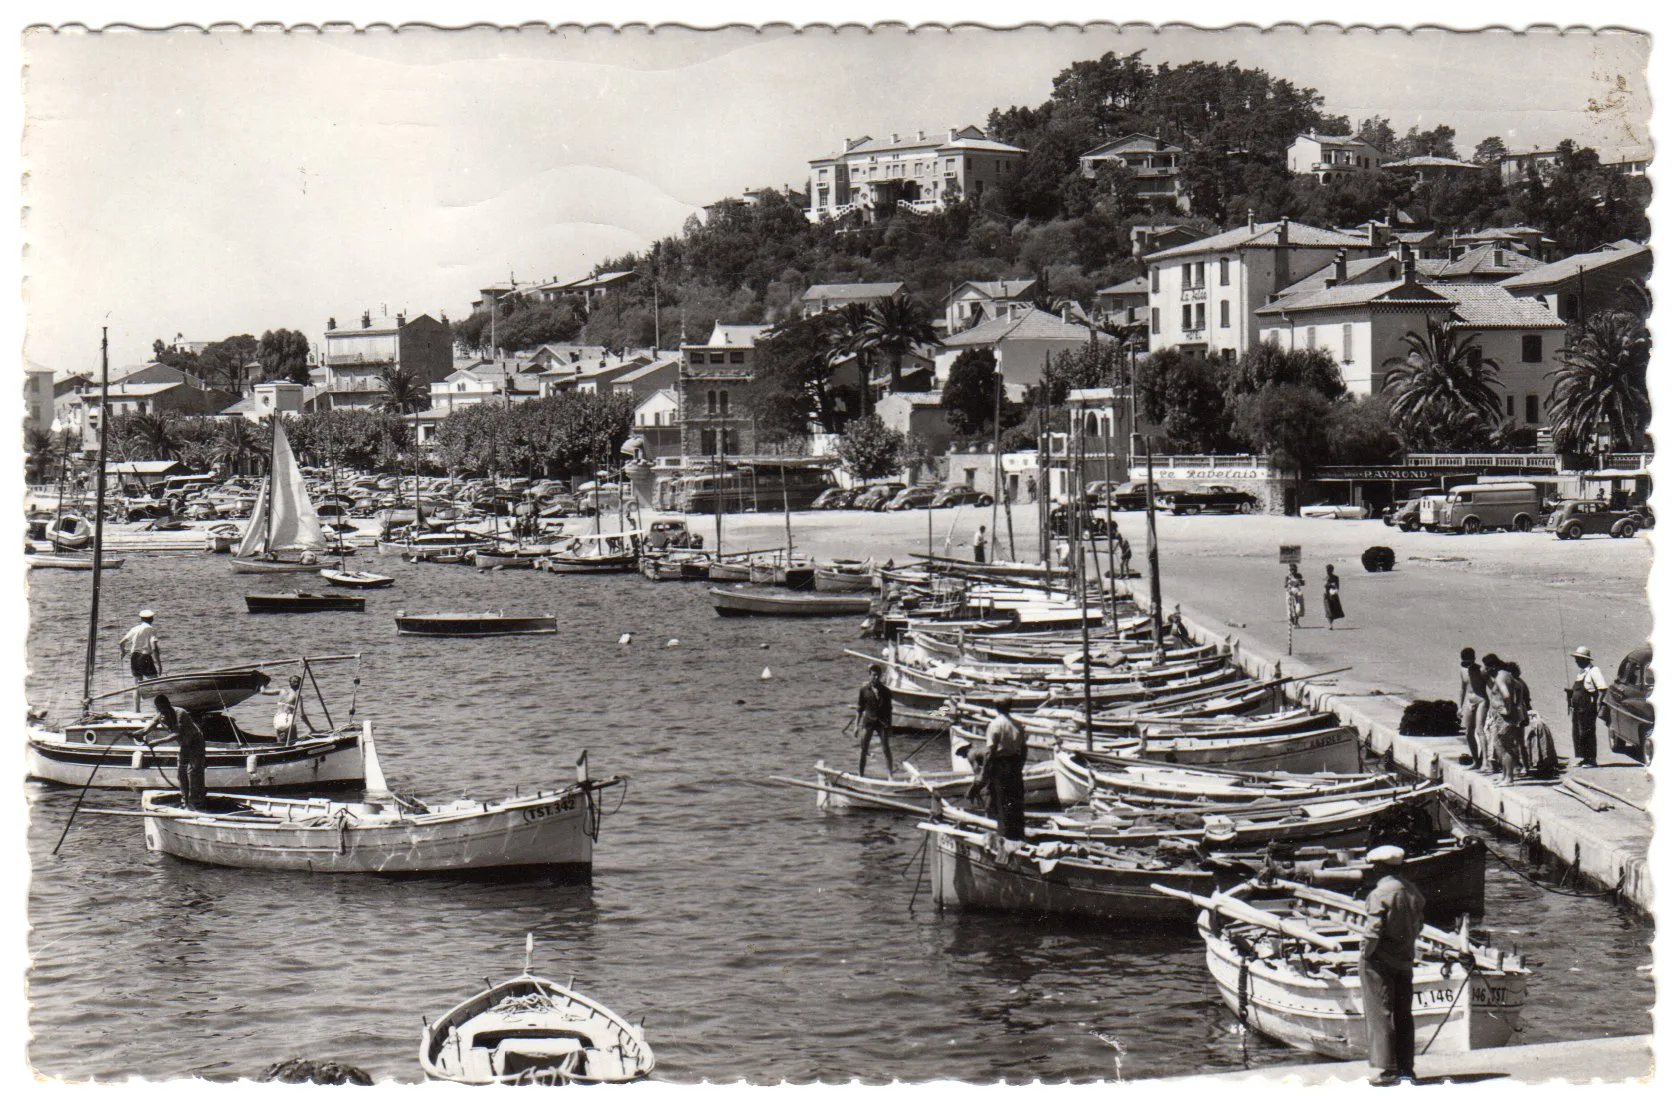 LE LAVANDOU alrededor de 1958 - El puerto (Ed. Foto Lemaire)